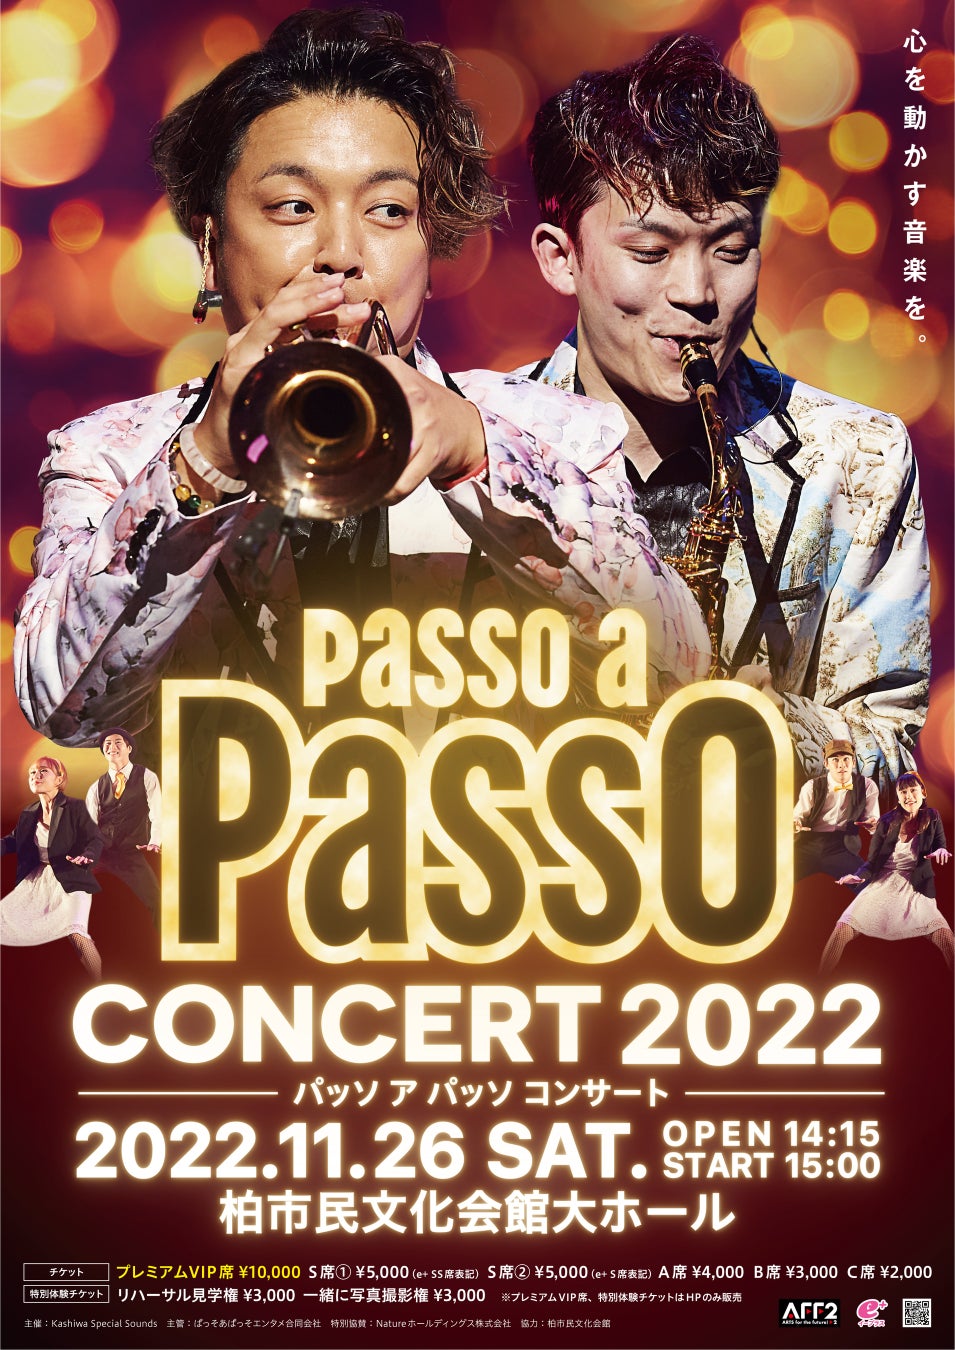 柏市出身 人気2人組ミュージシャン【Passo a Passo】が、11月26日毎年恒例「Passo a Passo Concert 2022 〜心を動かす音楽を〜」を地元柏市にて開催。